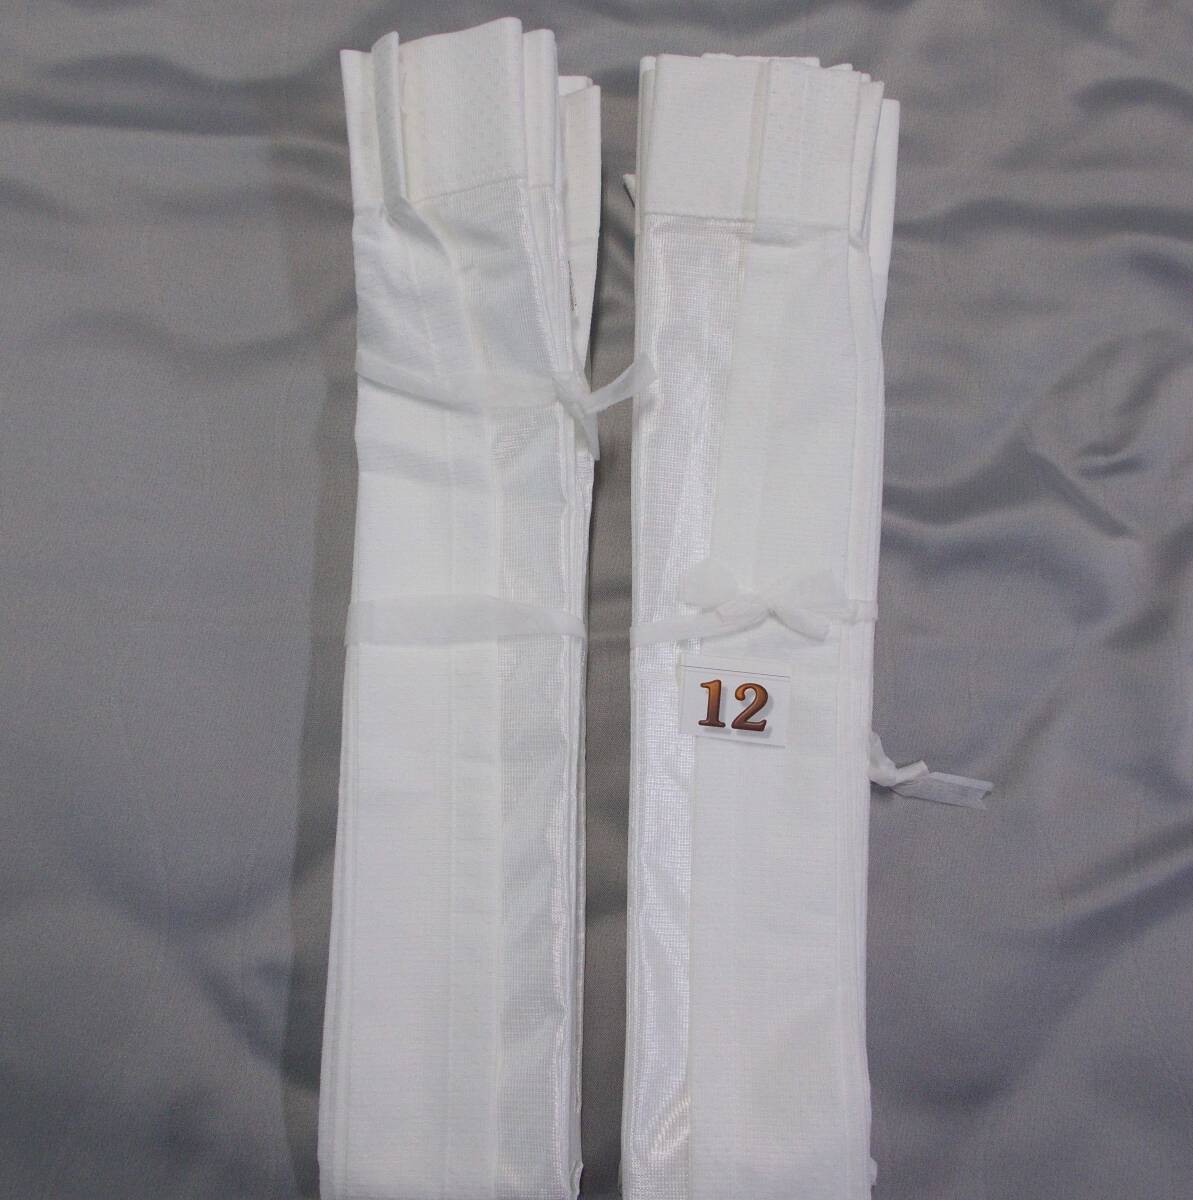 ミラーレースカーテン2枚組 90×109cm オーダーカーテンの採寸を間違った商品の処分 R12-1の画像3